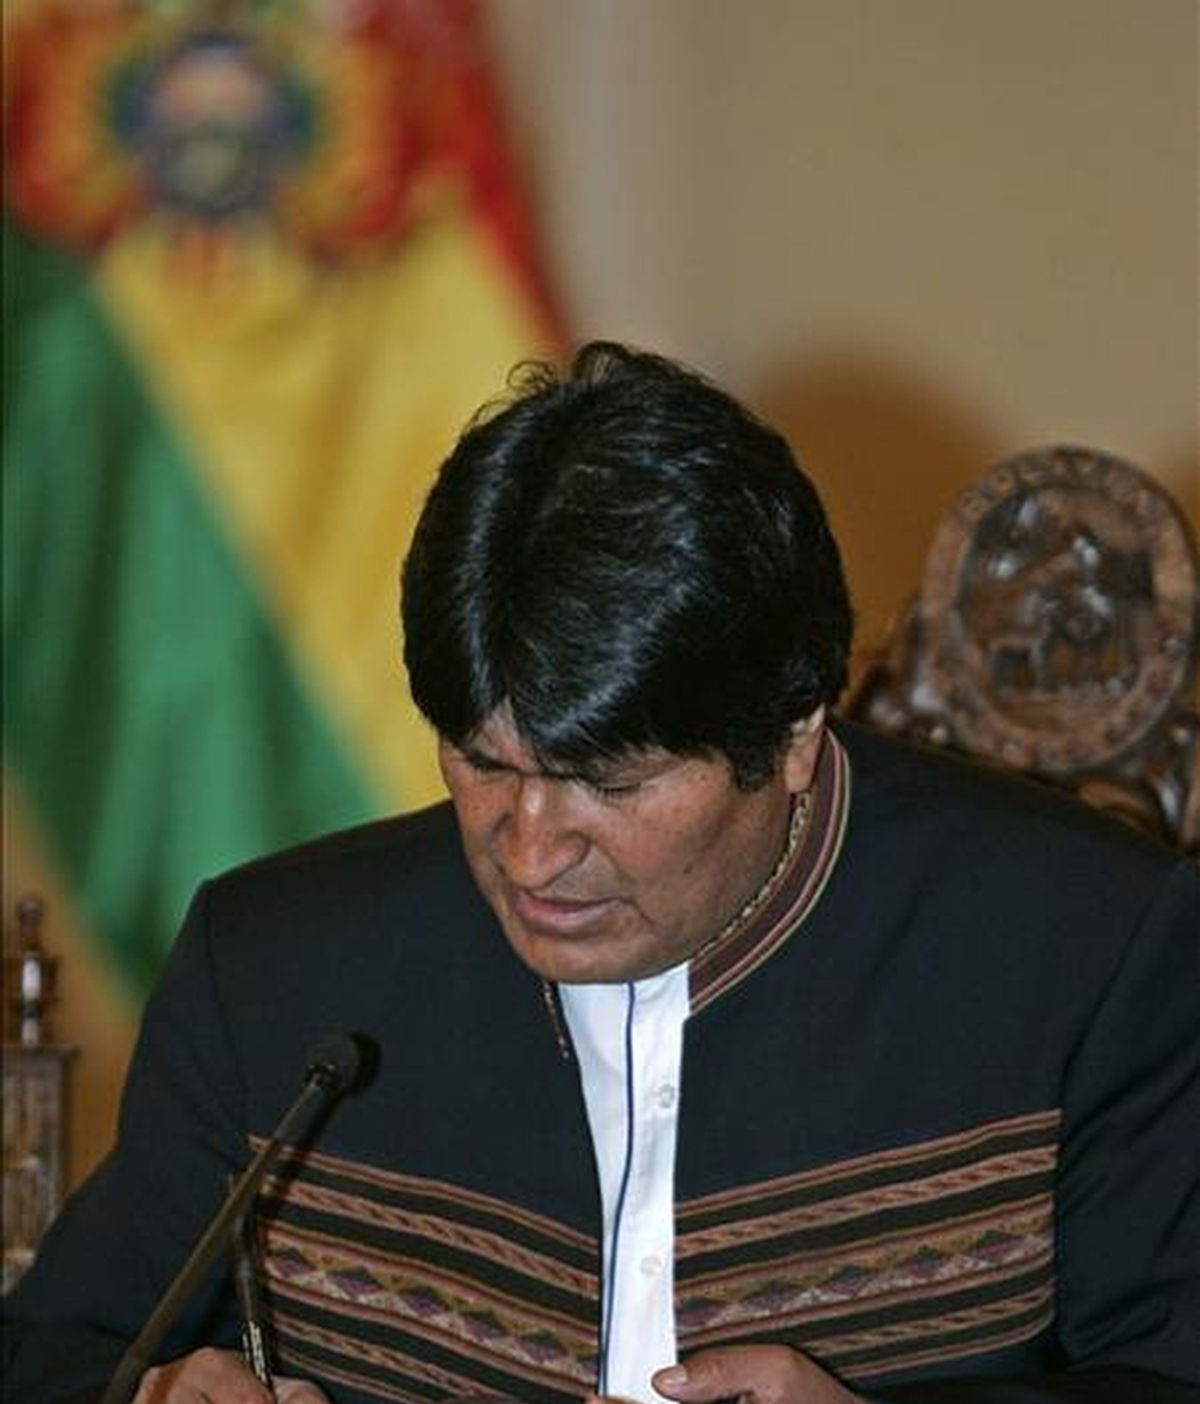 El presidente de Bolivia, Evo Morales, entregó los proyectos a un representante del Parlamento boliviano e instó al Congreso que los apruebe lo antes posible para que su ejecución sea "rápida". EFE